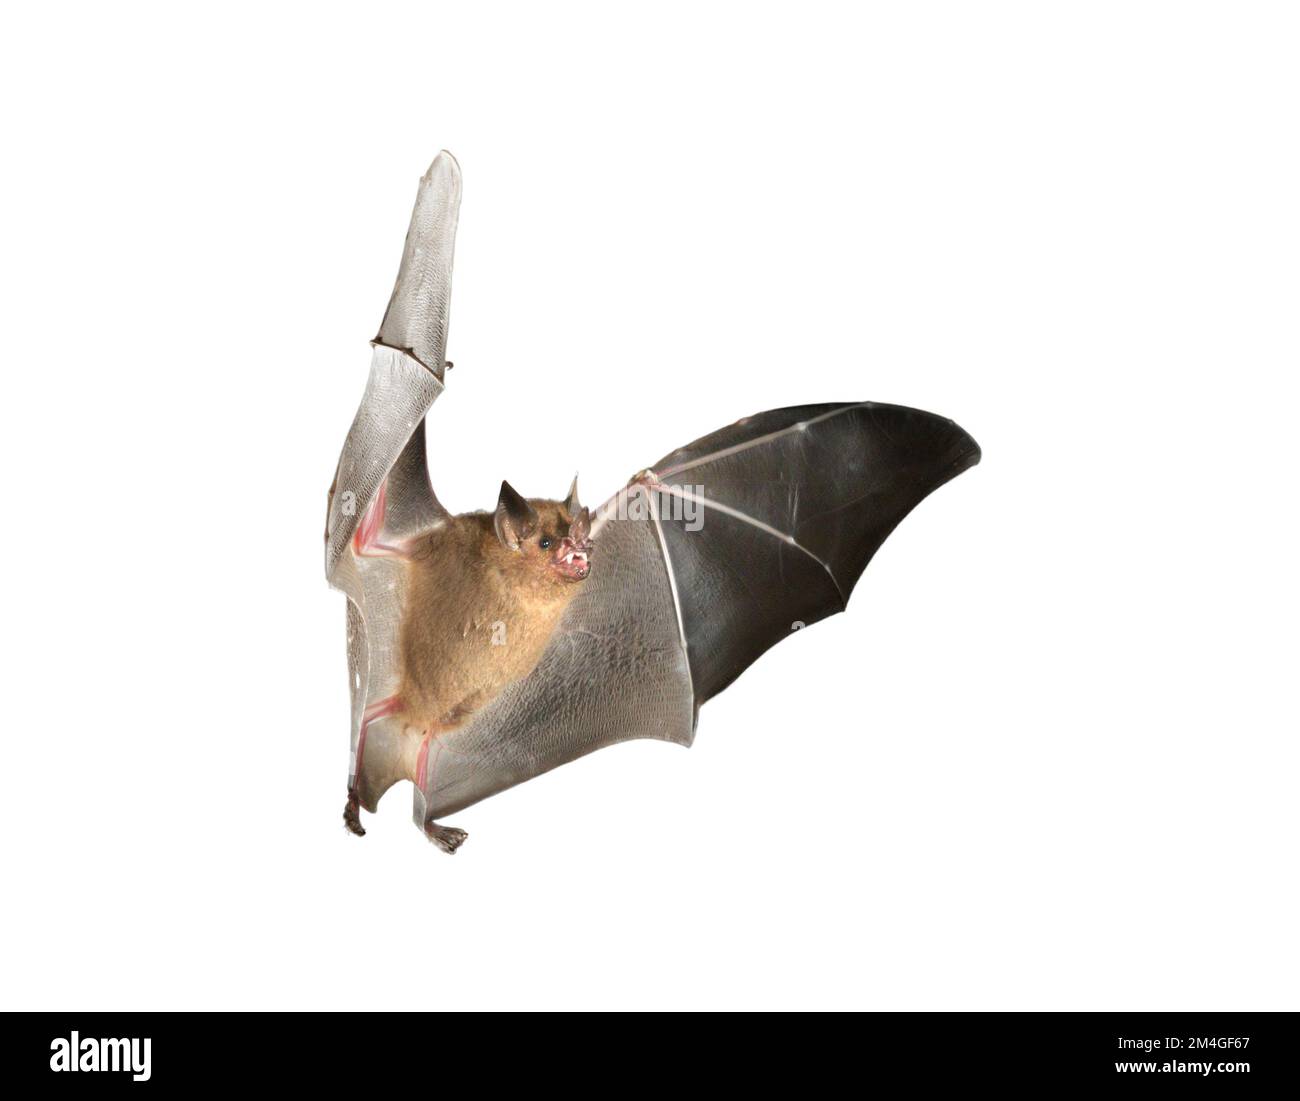 Seba's short-tailed bat (Carollia perspicillata) flying isolated on white background Stock Photo